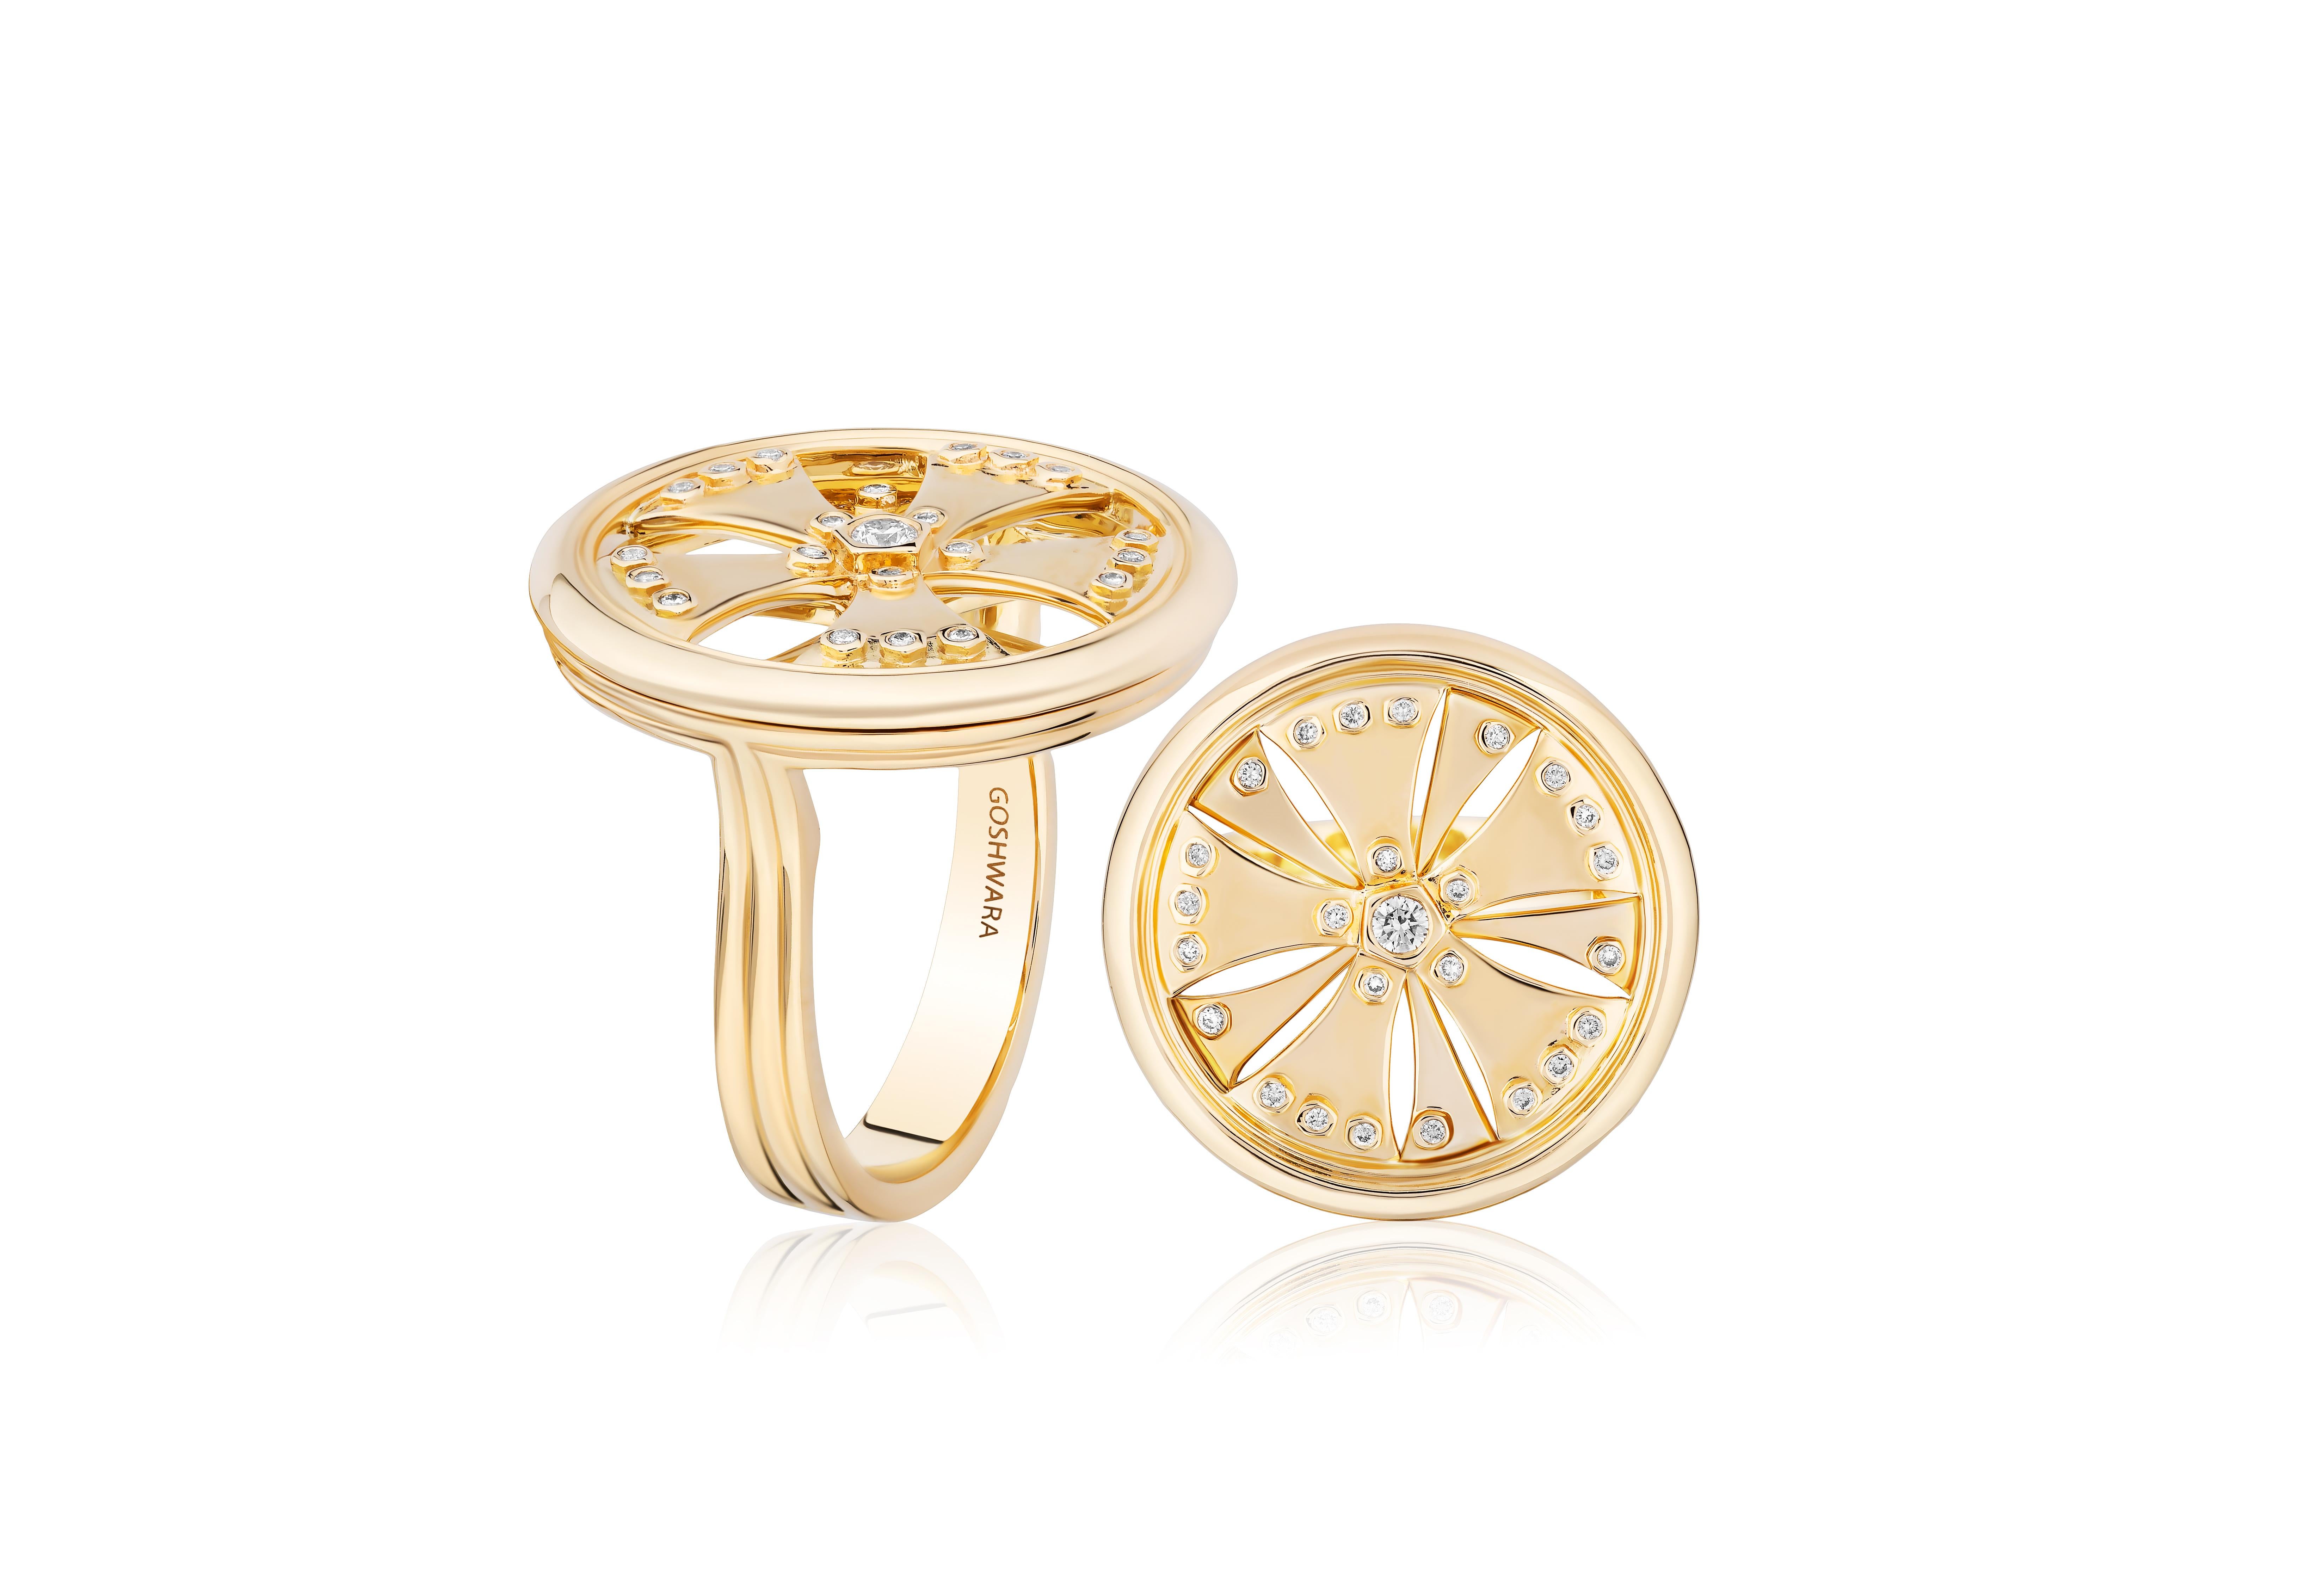 Der Diamond & Gold Wheel Ring aus der 'G-Classics' Collection ist ein exquisites Schmuckstück, das aus luxuriösem 18-karätigem Gelbgold gefertigt ist. Dieser auffällige Ring besticht durch sein fesselndes Design mit einem Rad in der Mitte, das mit